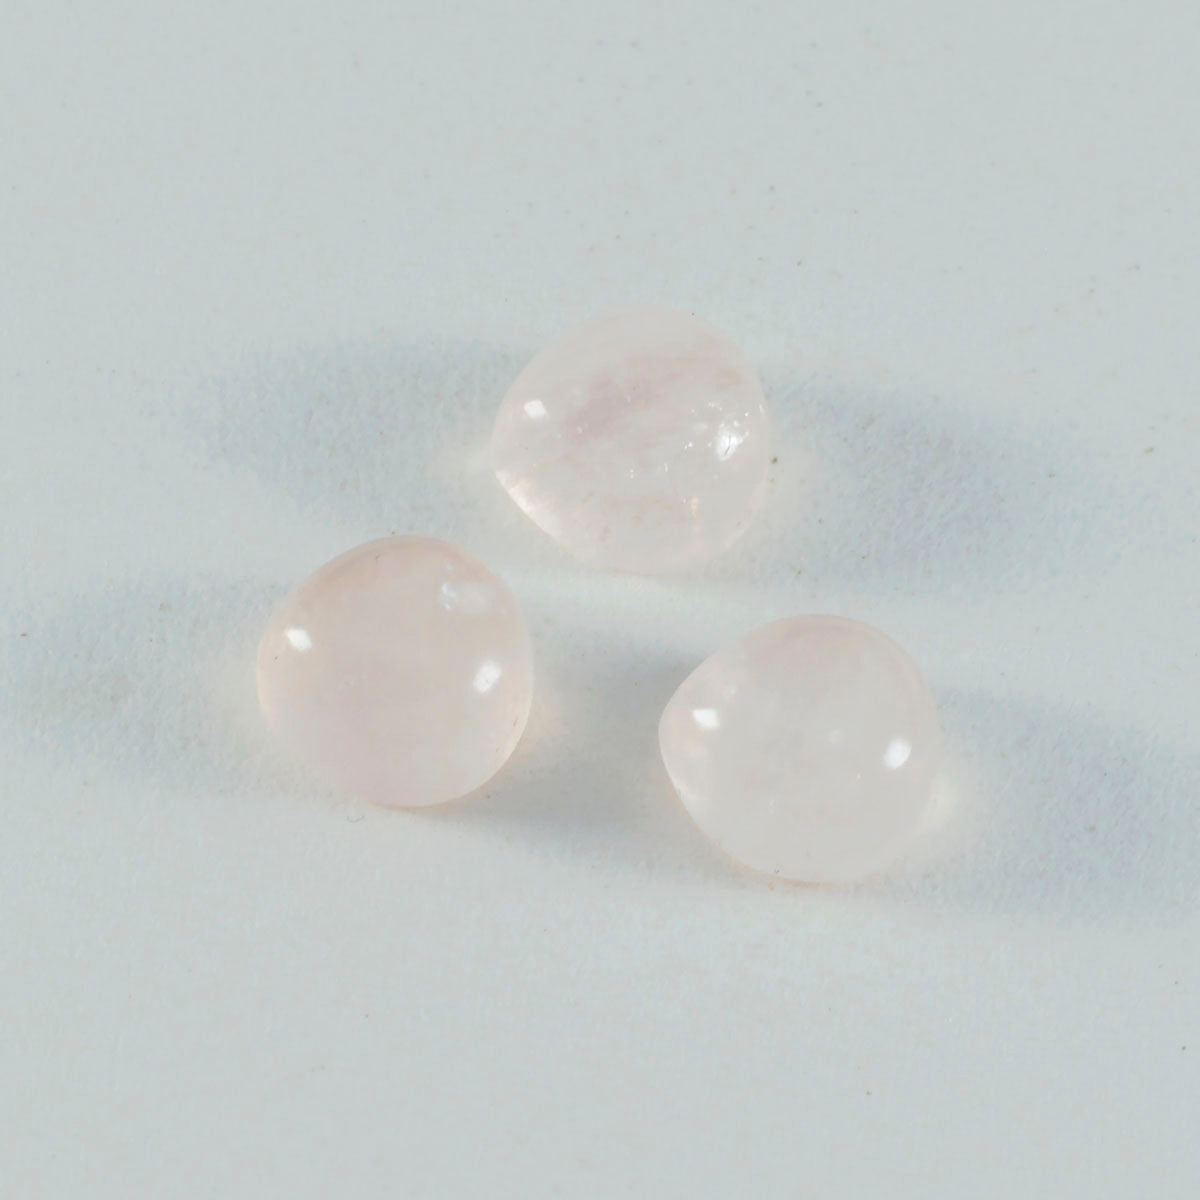 riyogems 1 pieza cabujón de cuarzo rosa rosa 14x14 mm forma de corazón a+1 piedra preciosa suelta de calidad